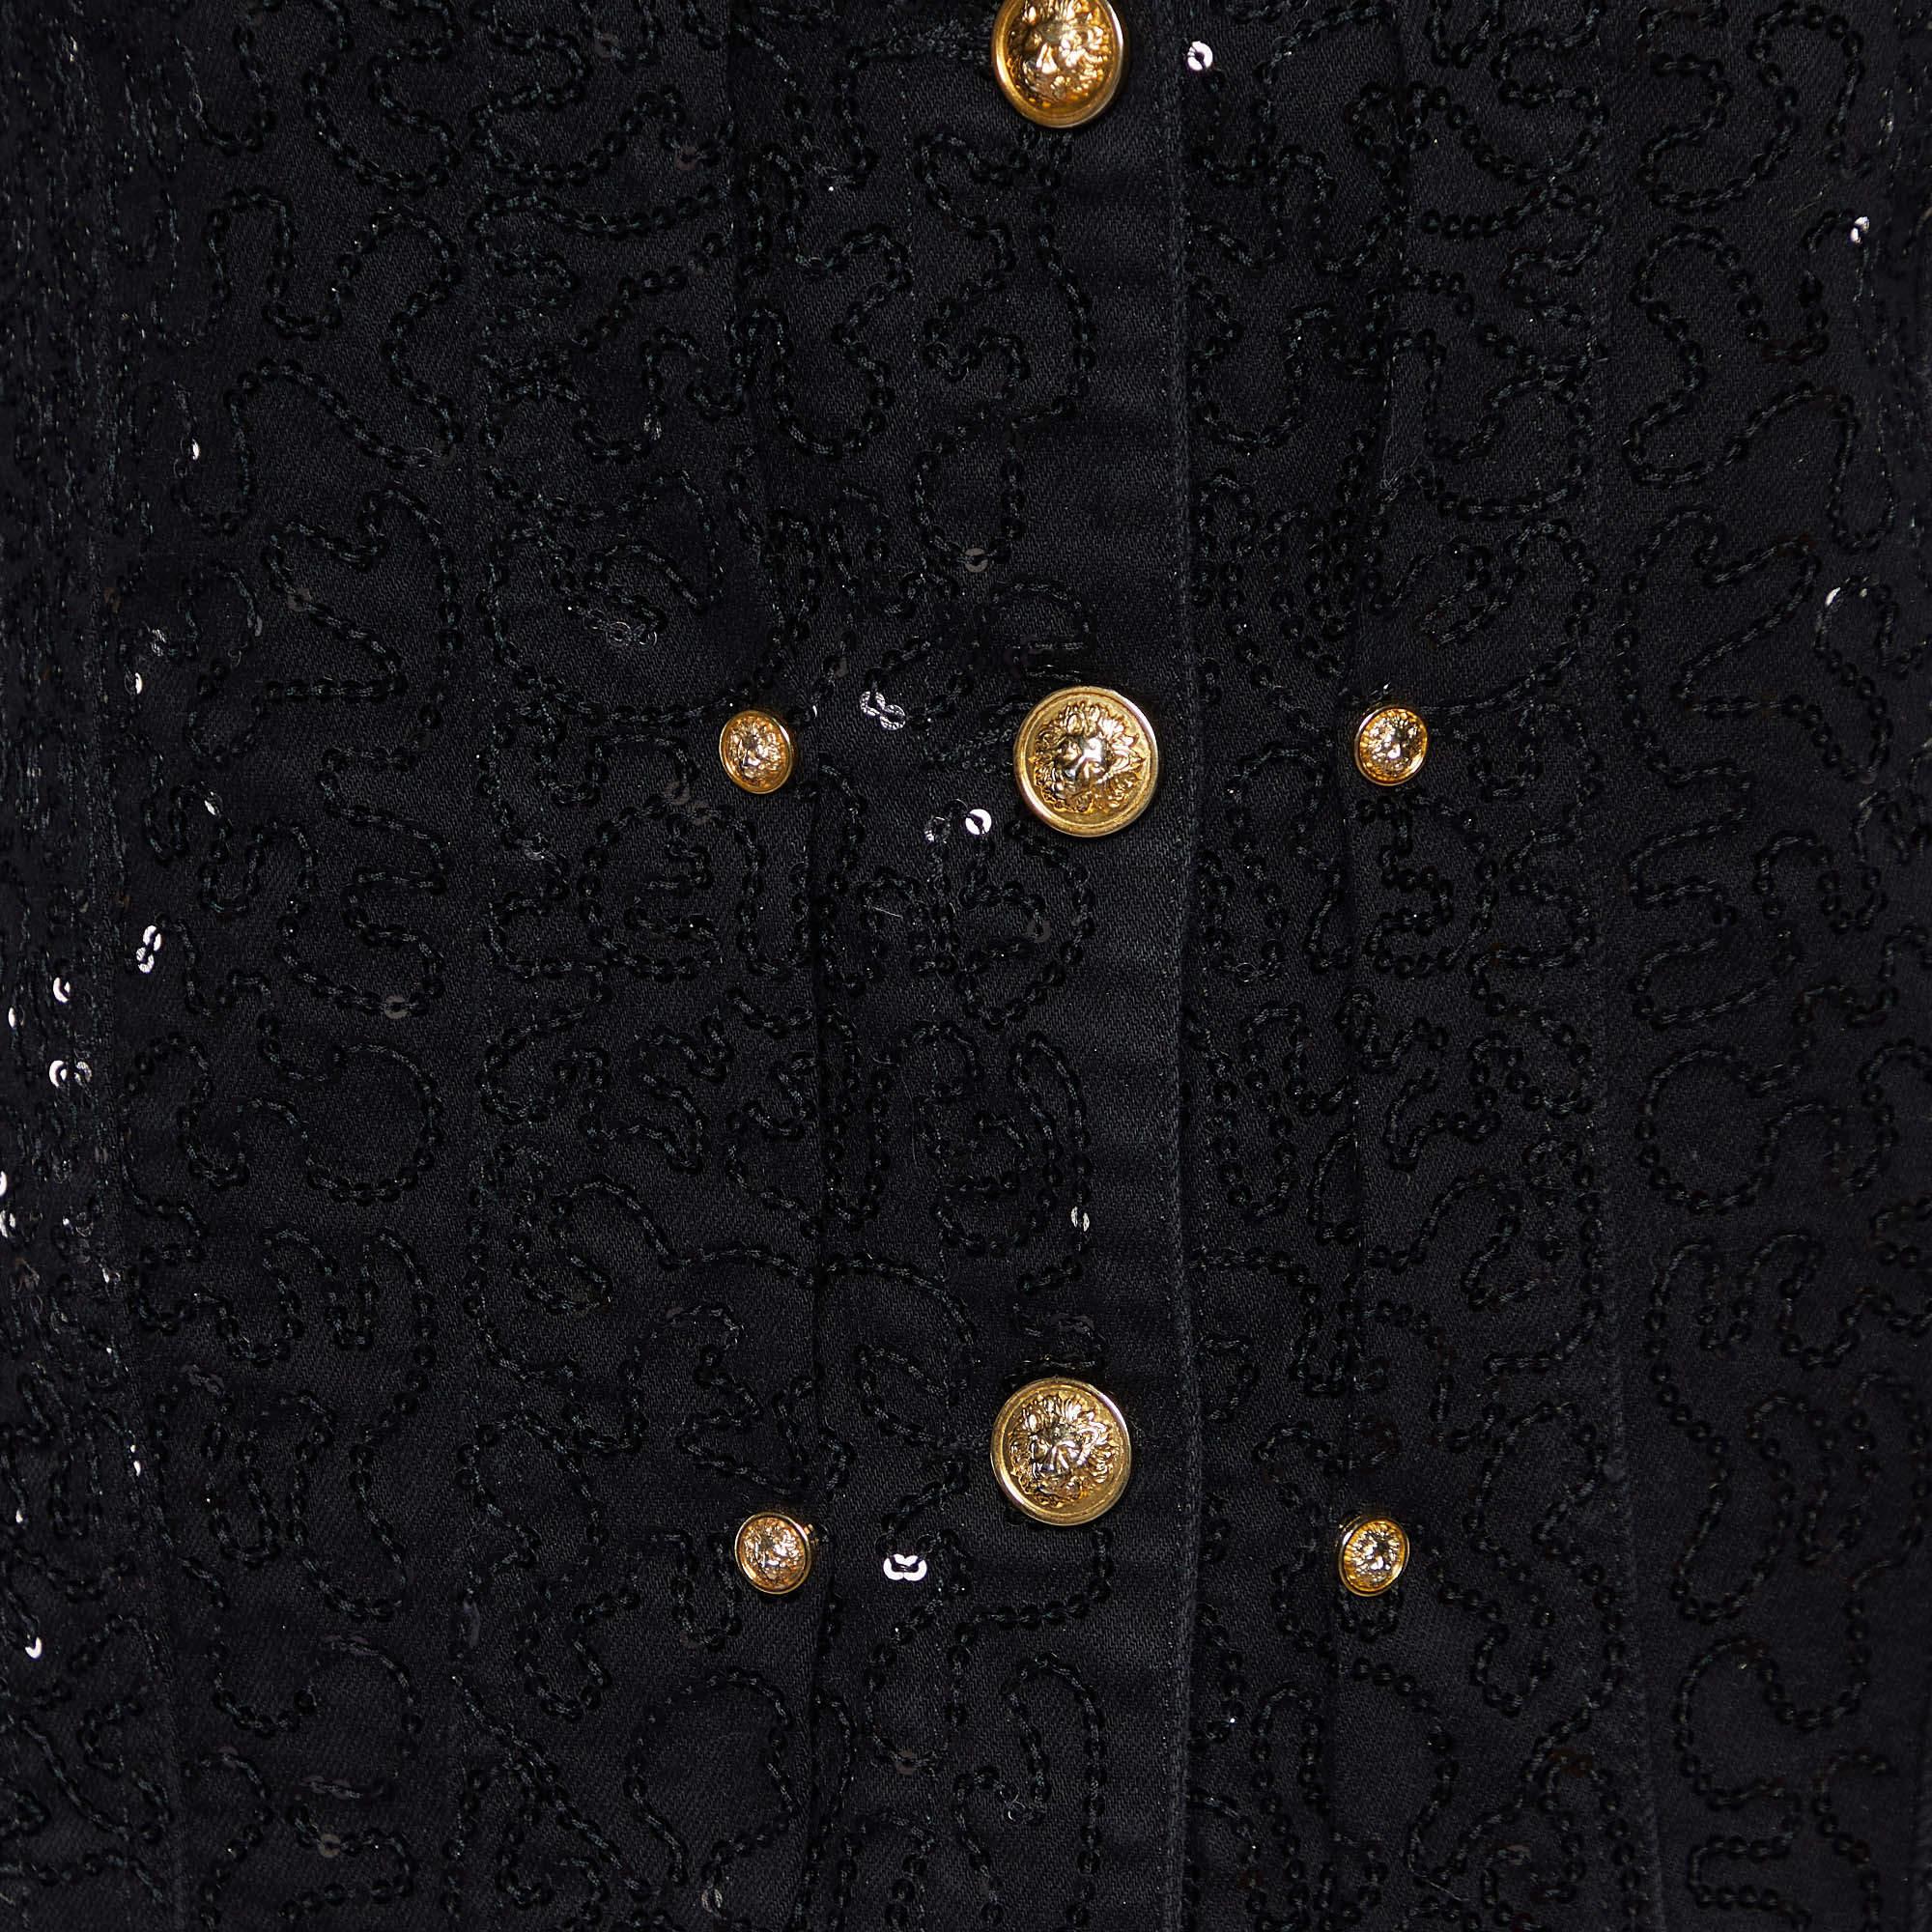 Versus Versace Black Denim Sequined Jacket S For Sale 1